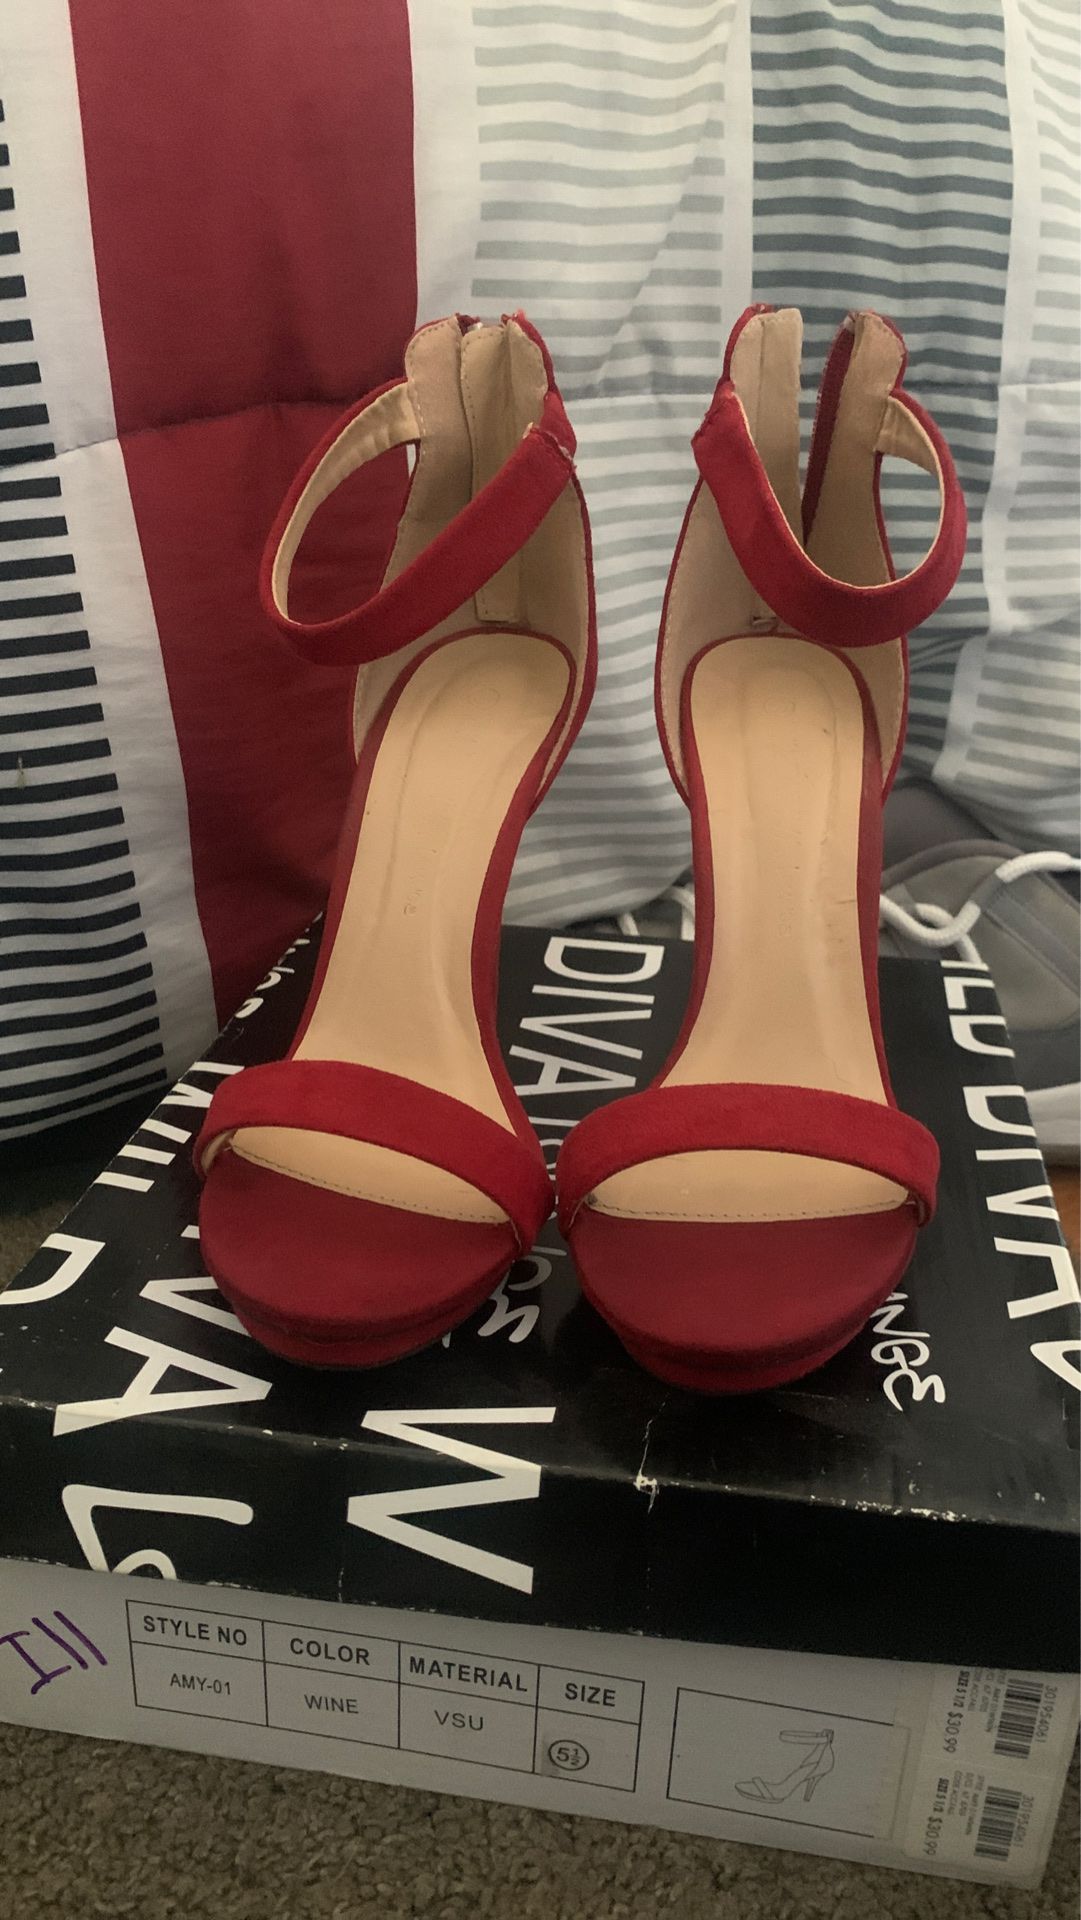 Wine heels